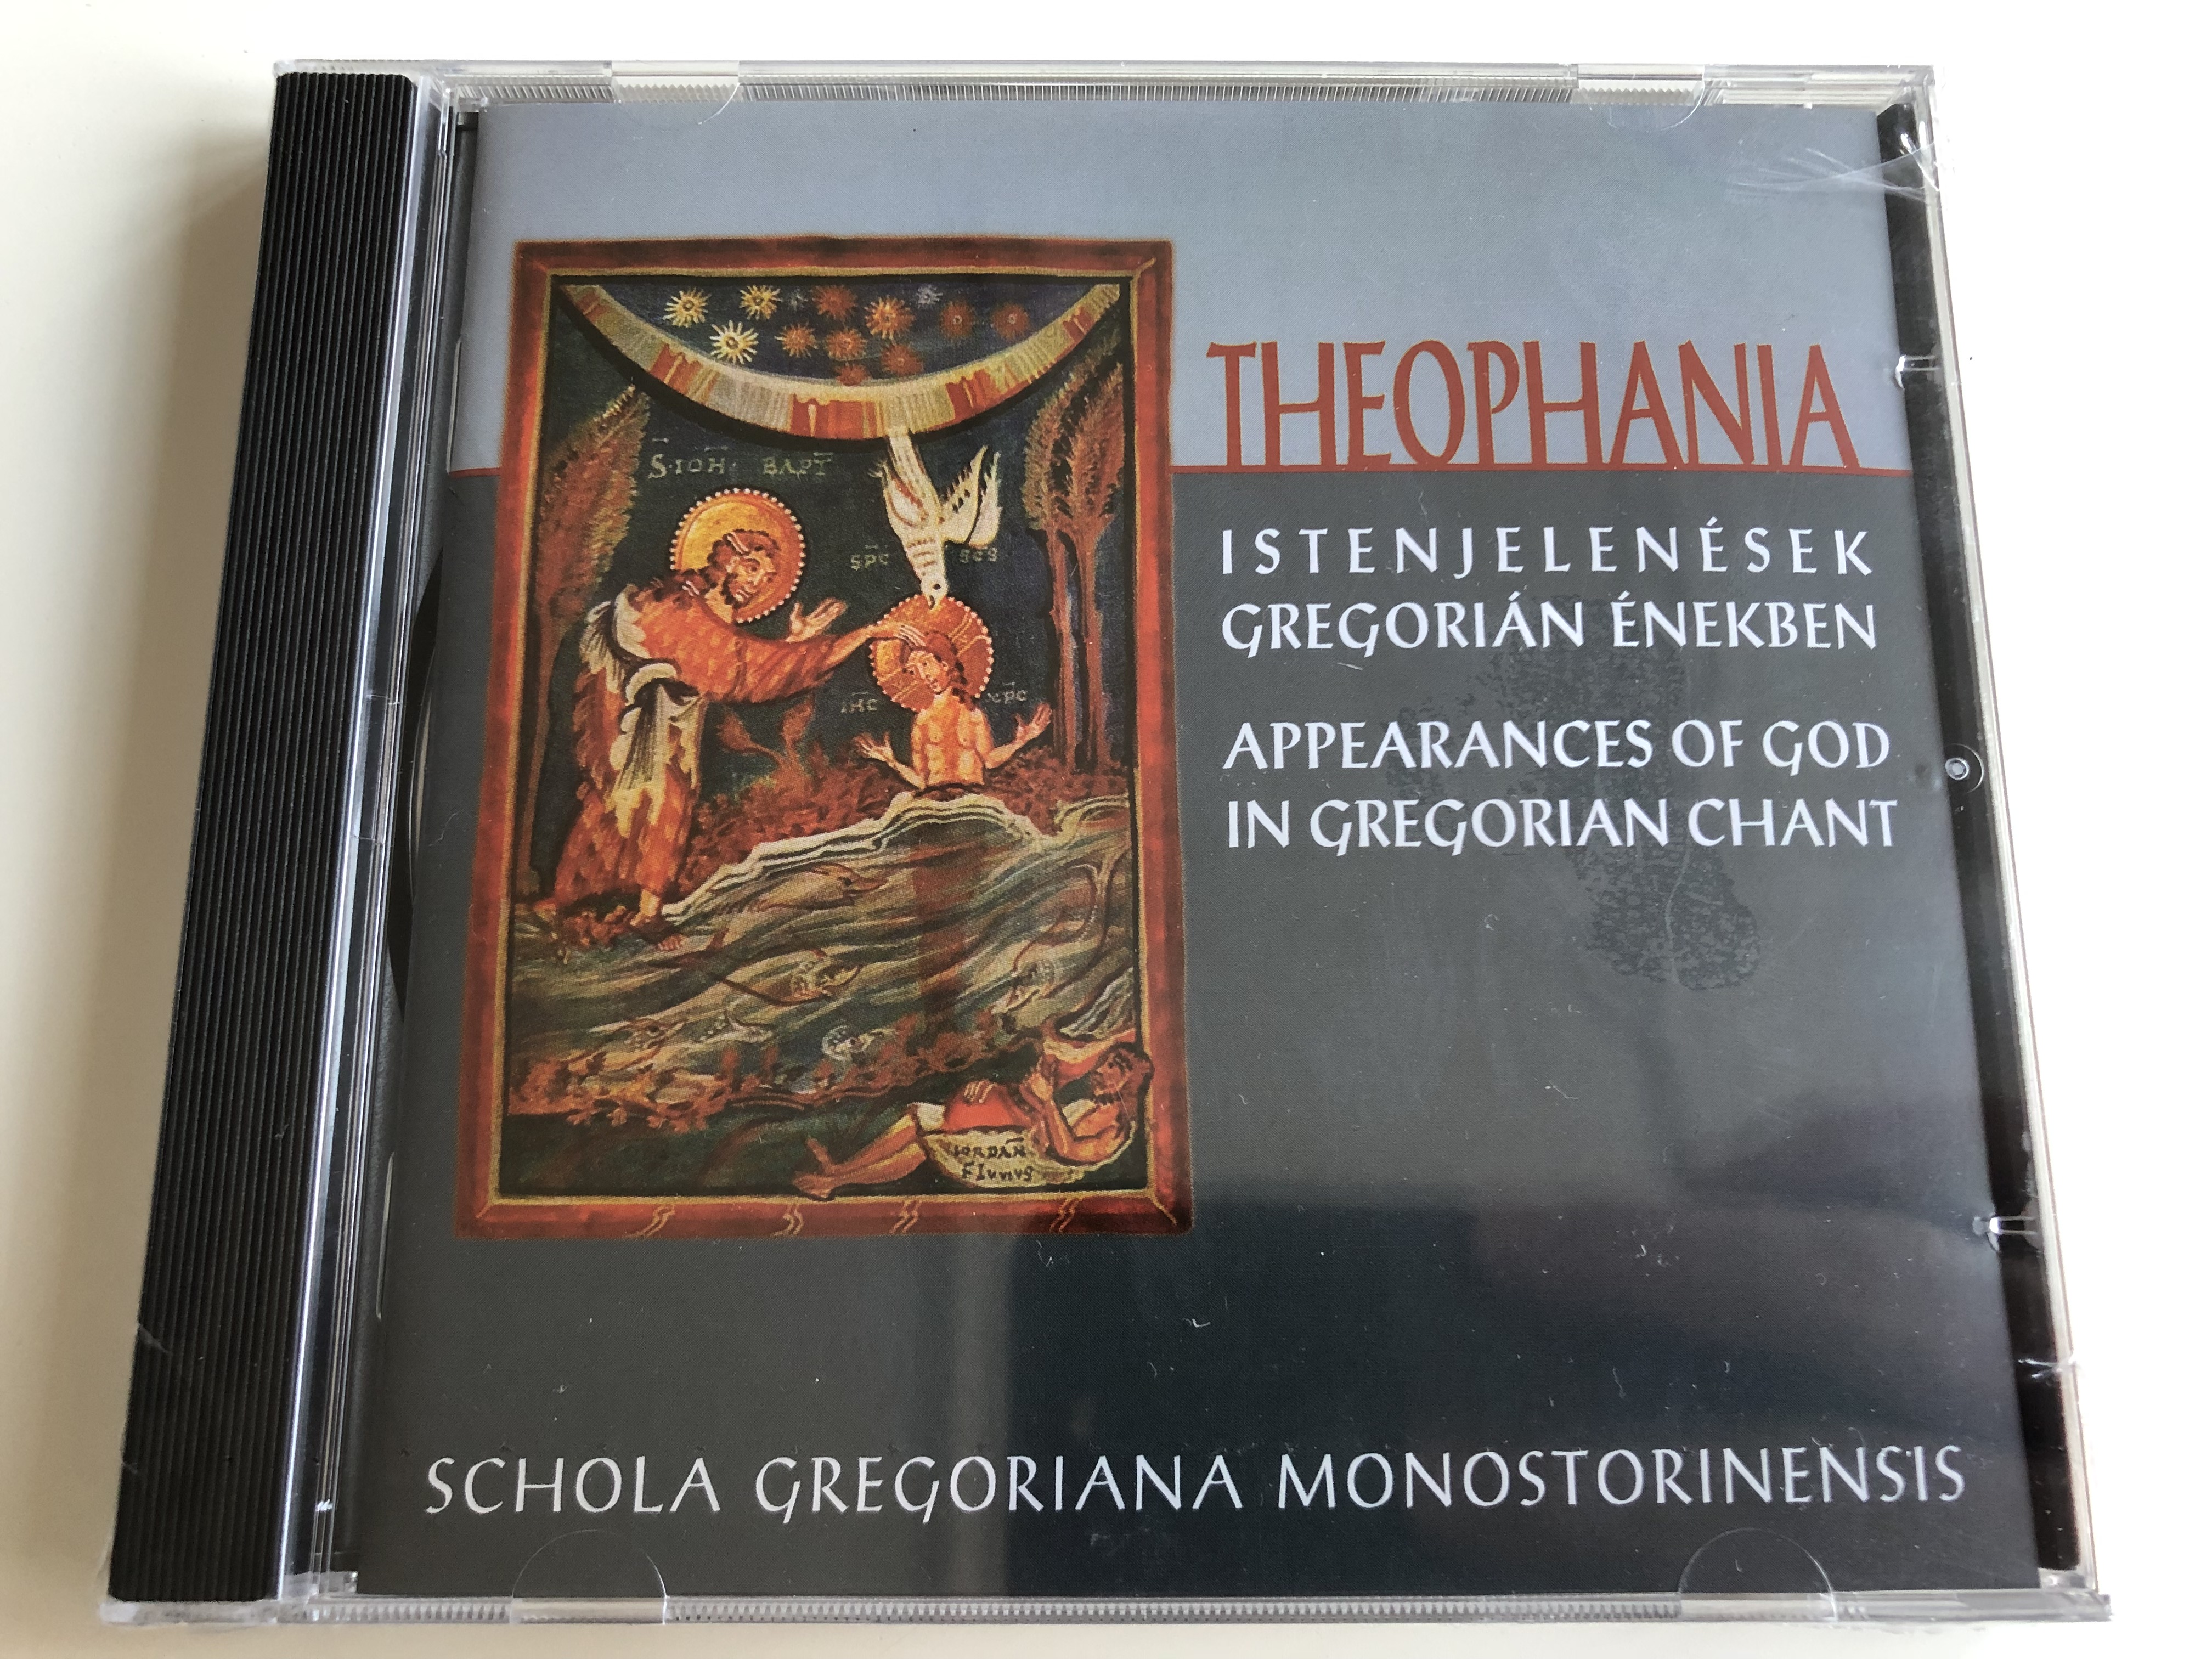 theophania-appearances-of-god-in-gregorian-chant-audio-cd-2008-istenjelen-sek-gregori-n-nekben-schola-gregoriana-monostorinensis-1-.jpg